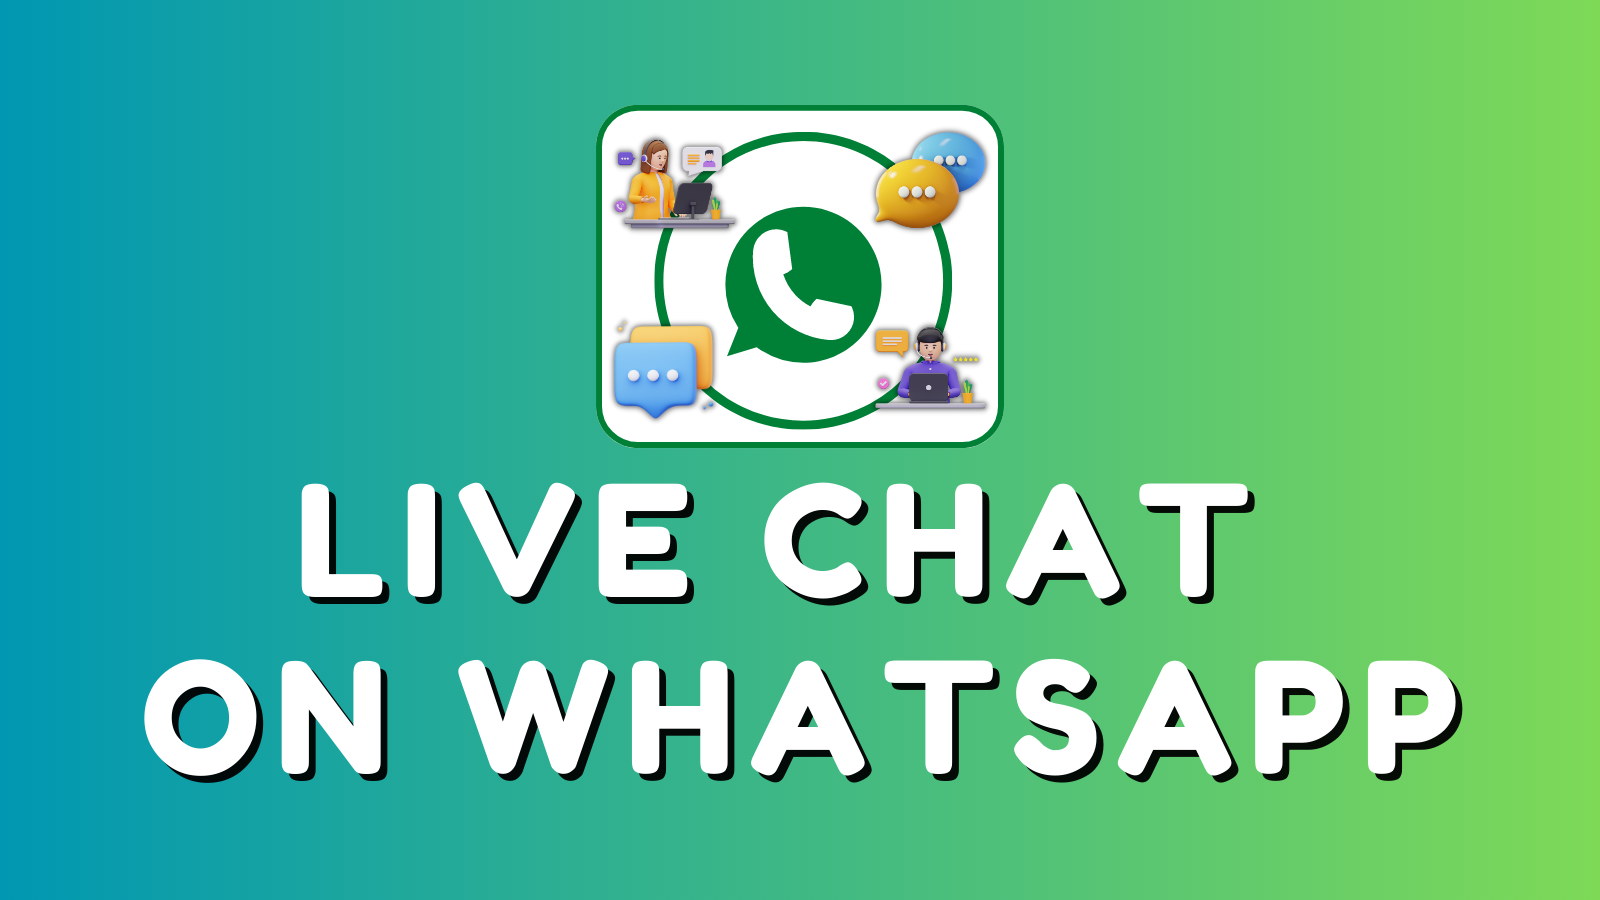 Erweiterung für Live Chat auf WhatsApp